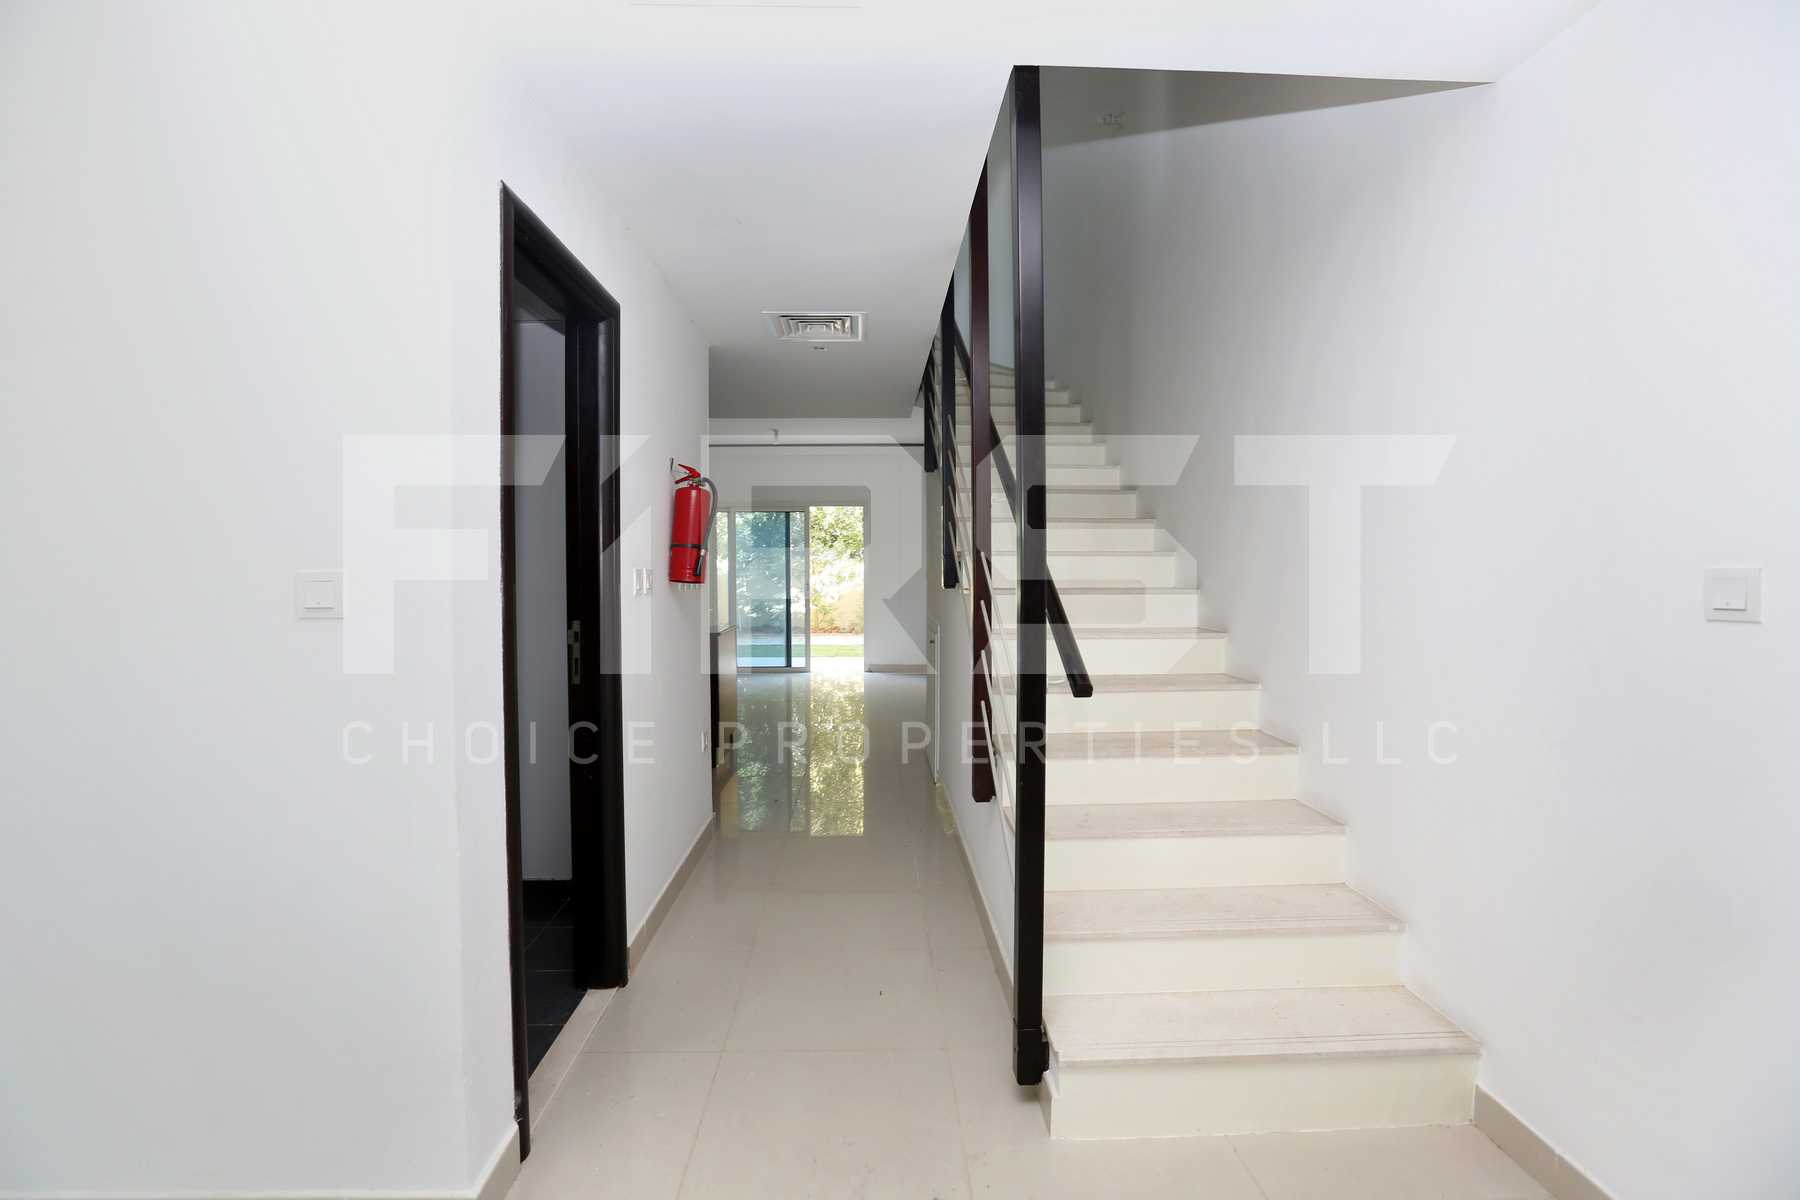 Internal Photo of 2 Bedroom Villa in Al Reef Villas  Al Reef Abu Dhabi UAE 170.2 sq.m 1832 sq.ft (1).jpg